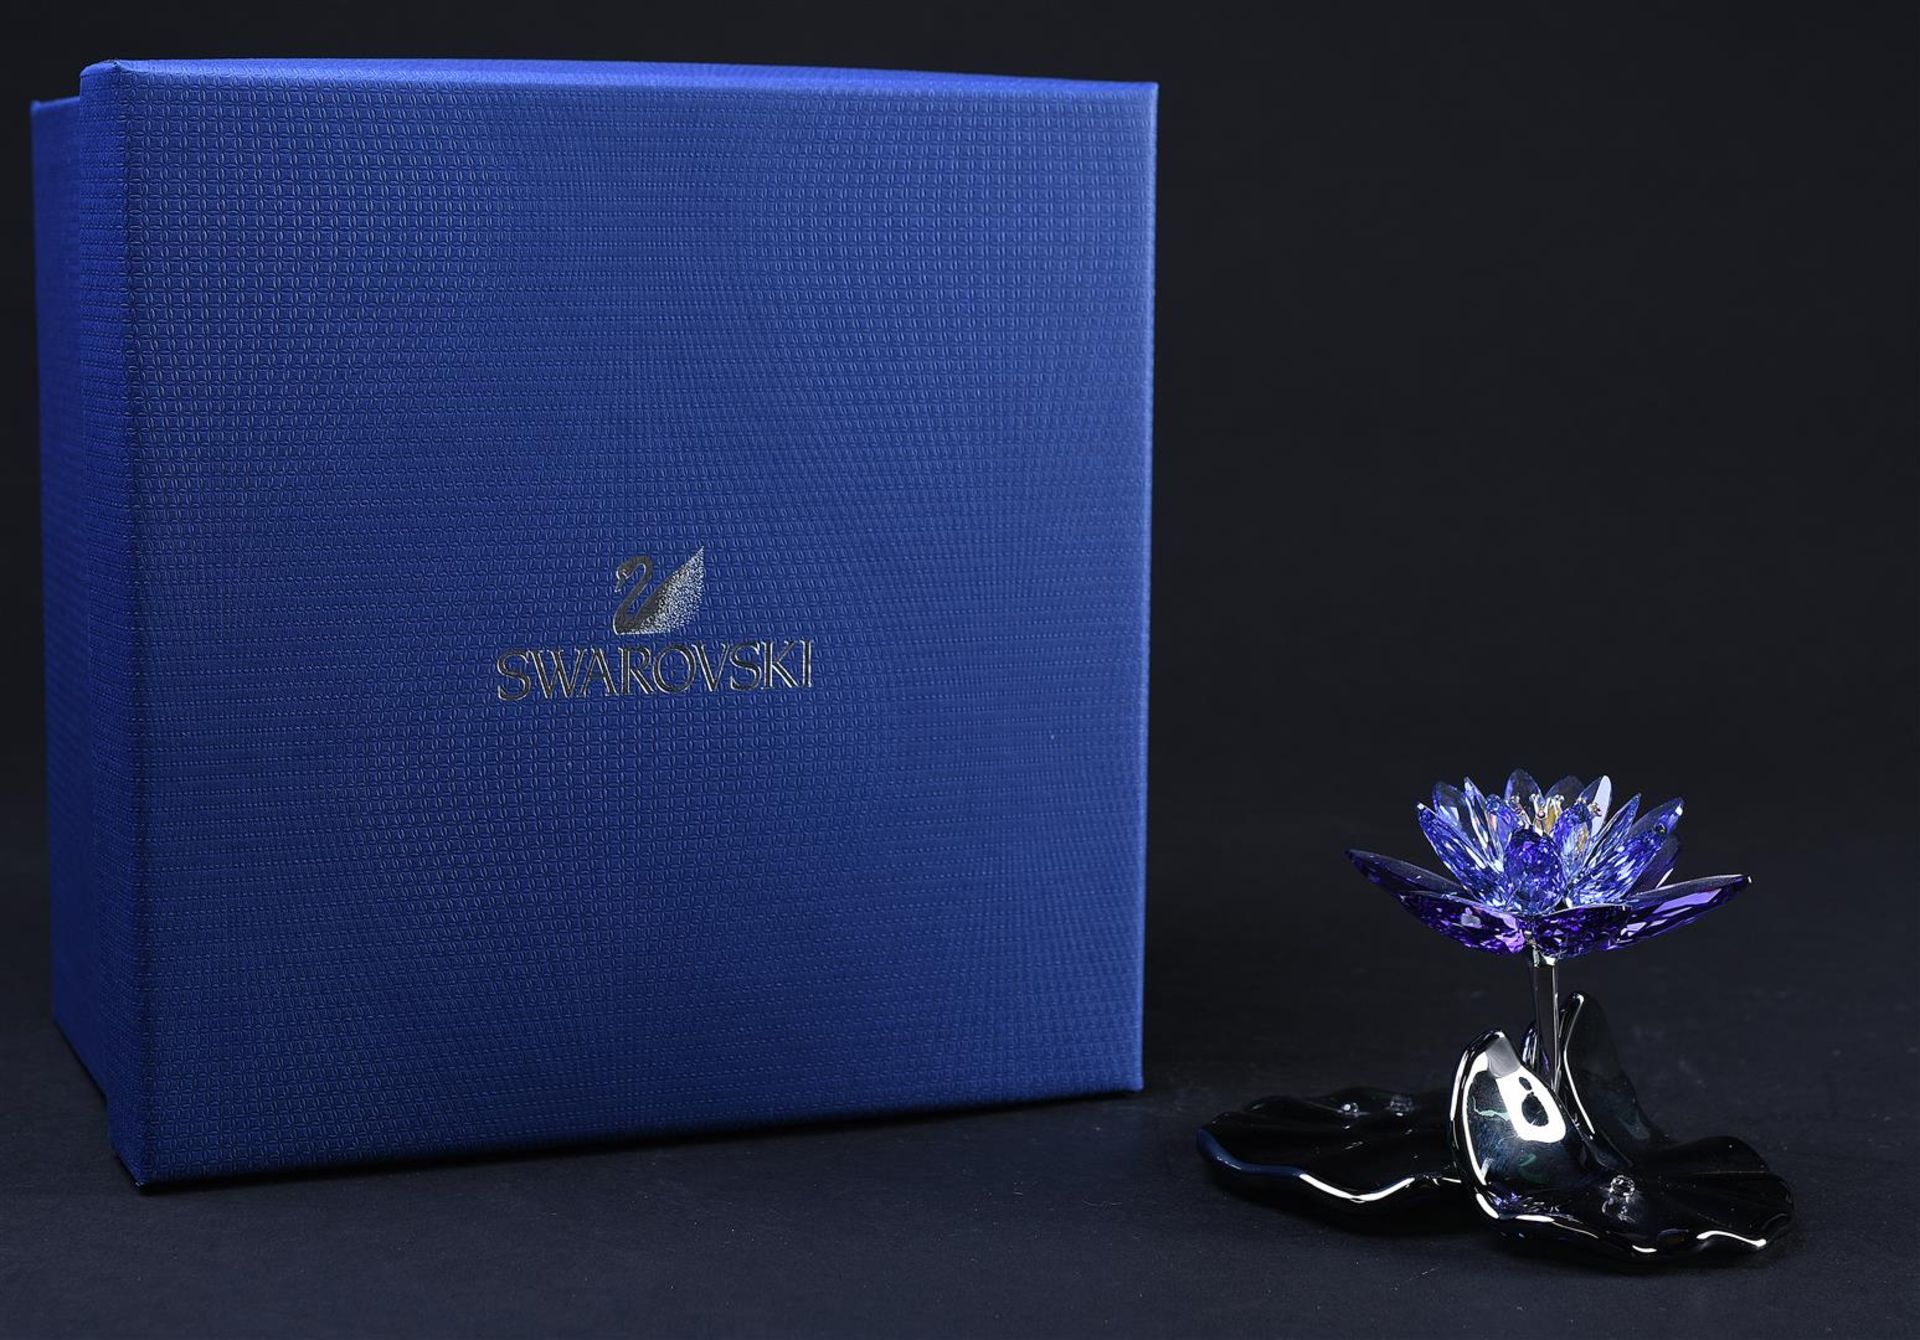 Swarovski, Water Lily - Blue Violet, Year of issue 2012, 1141630. Includes original box.
7.3 x 10.8  - Bild 4 aus 4